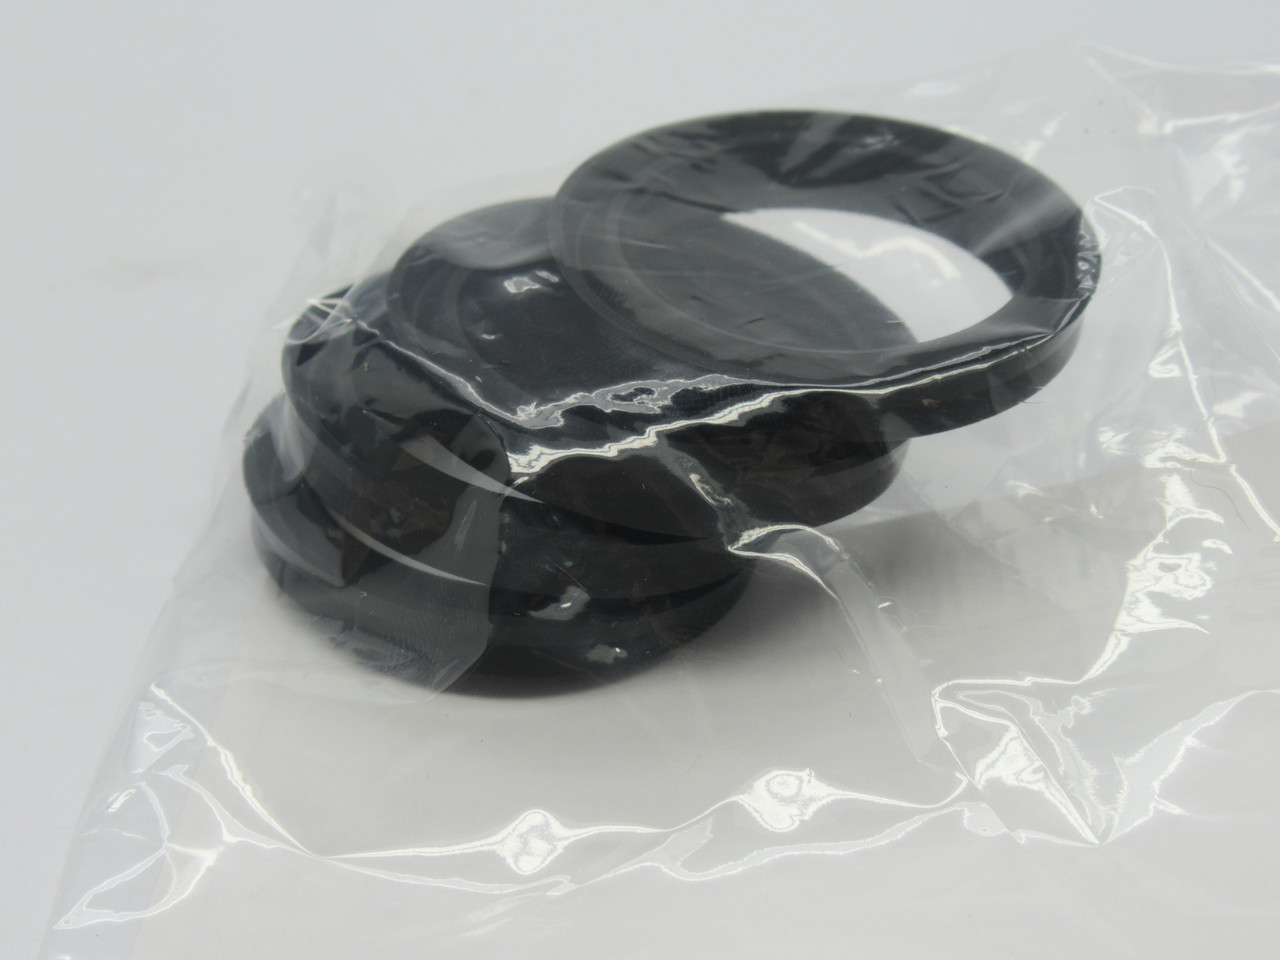 Sakagami SDR-30F Scraper Heat Resistant Dust Seal 30mm ID x 6.5mm W *4-Pack* NWB